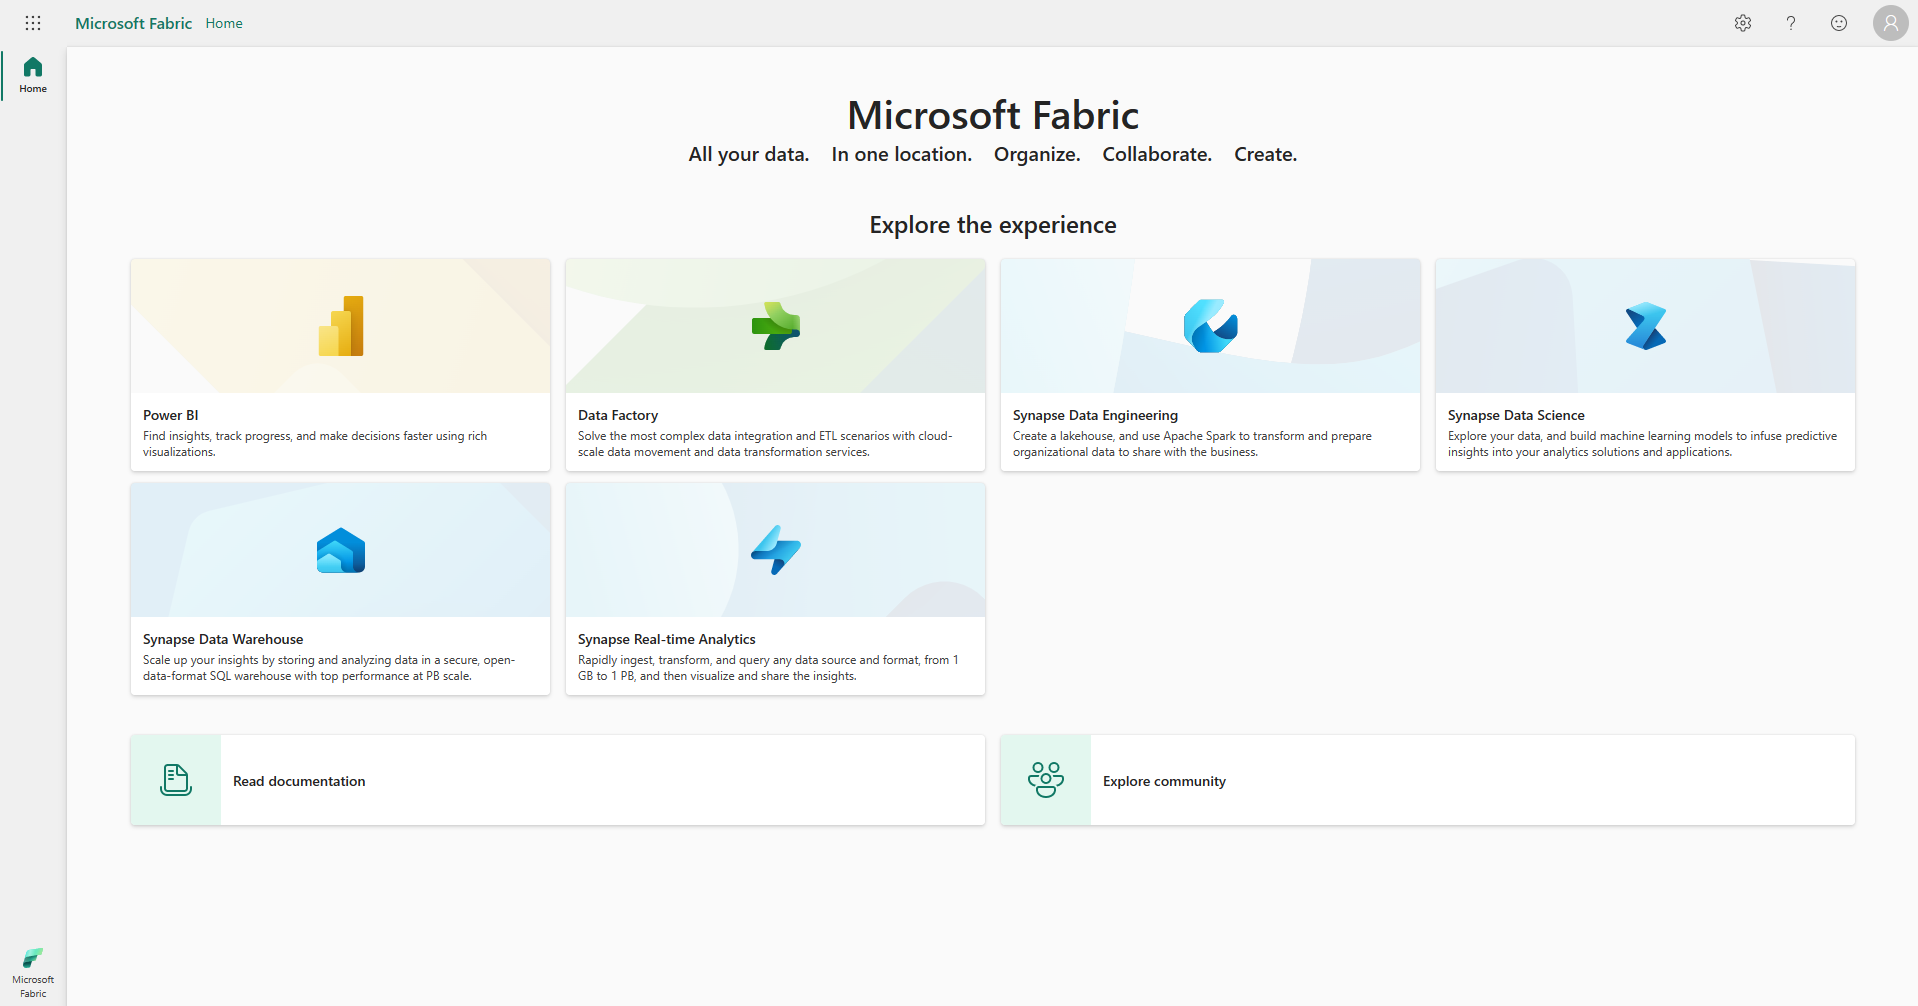 Schermopname van de startpagina van Microsoft Fabric met de accountmanager die rood wordt beschreven.